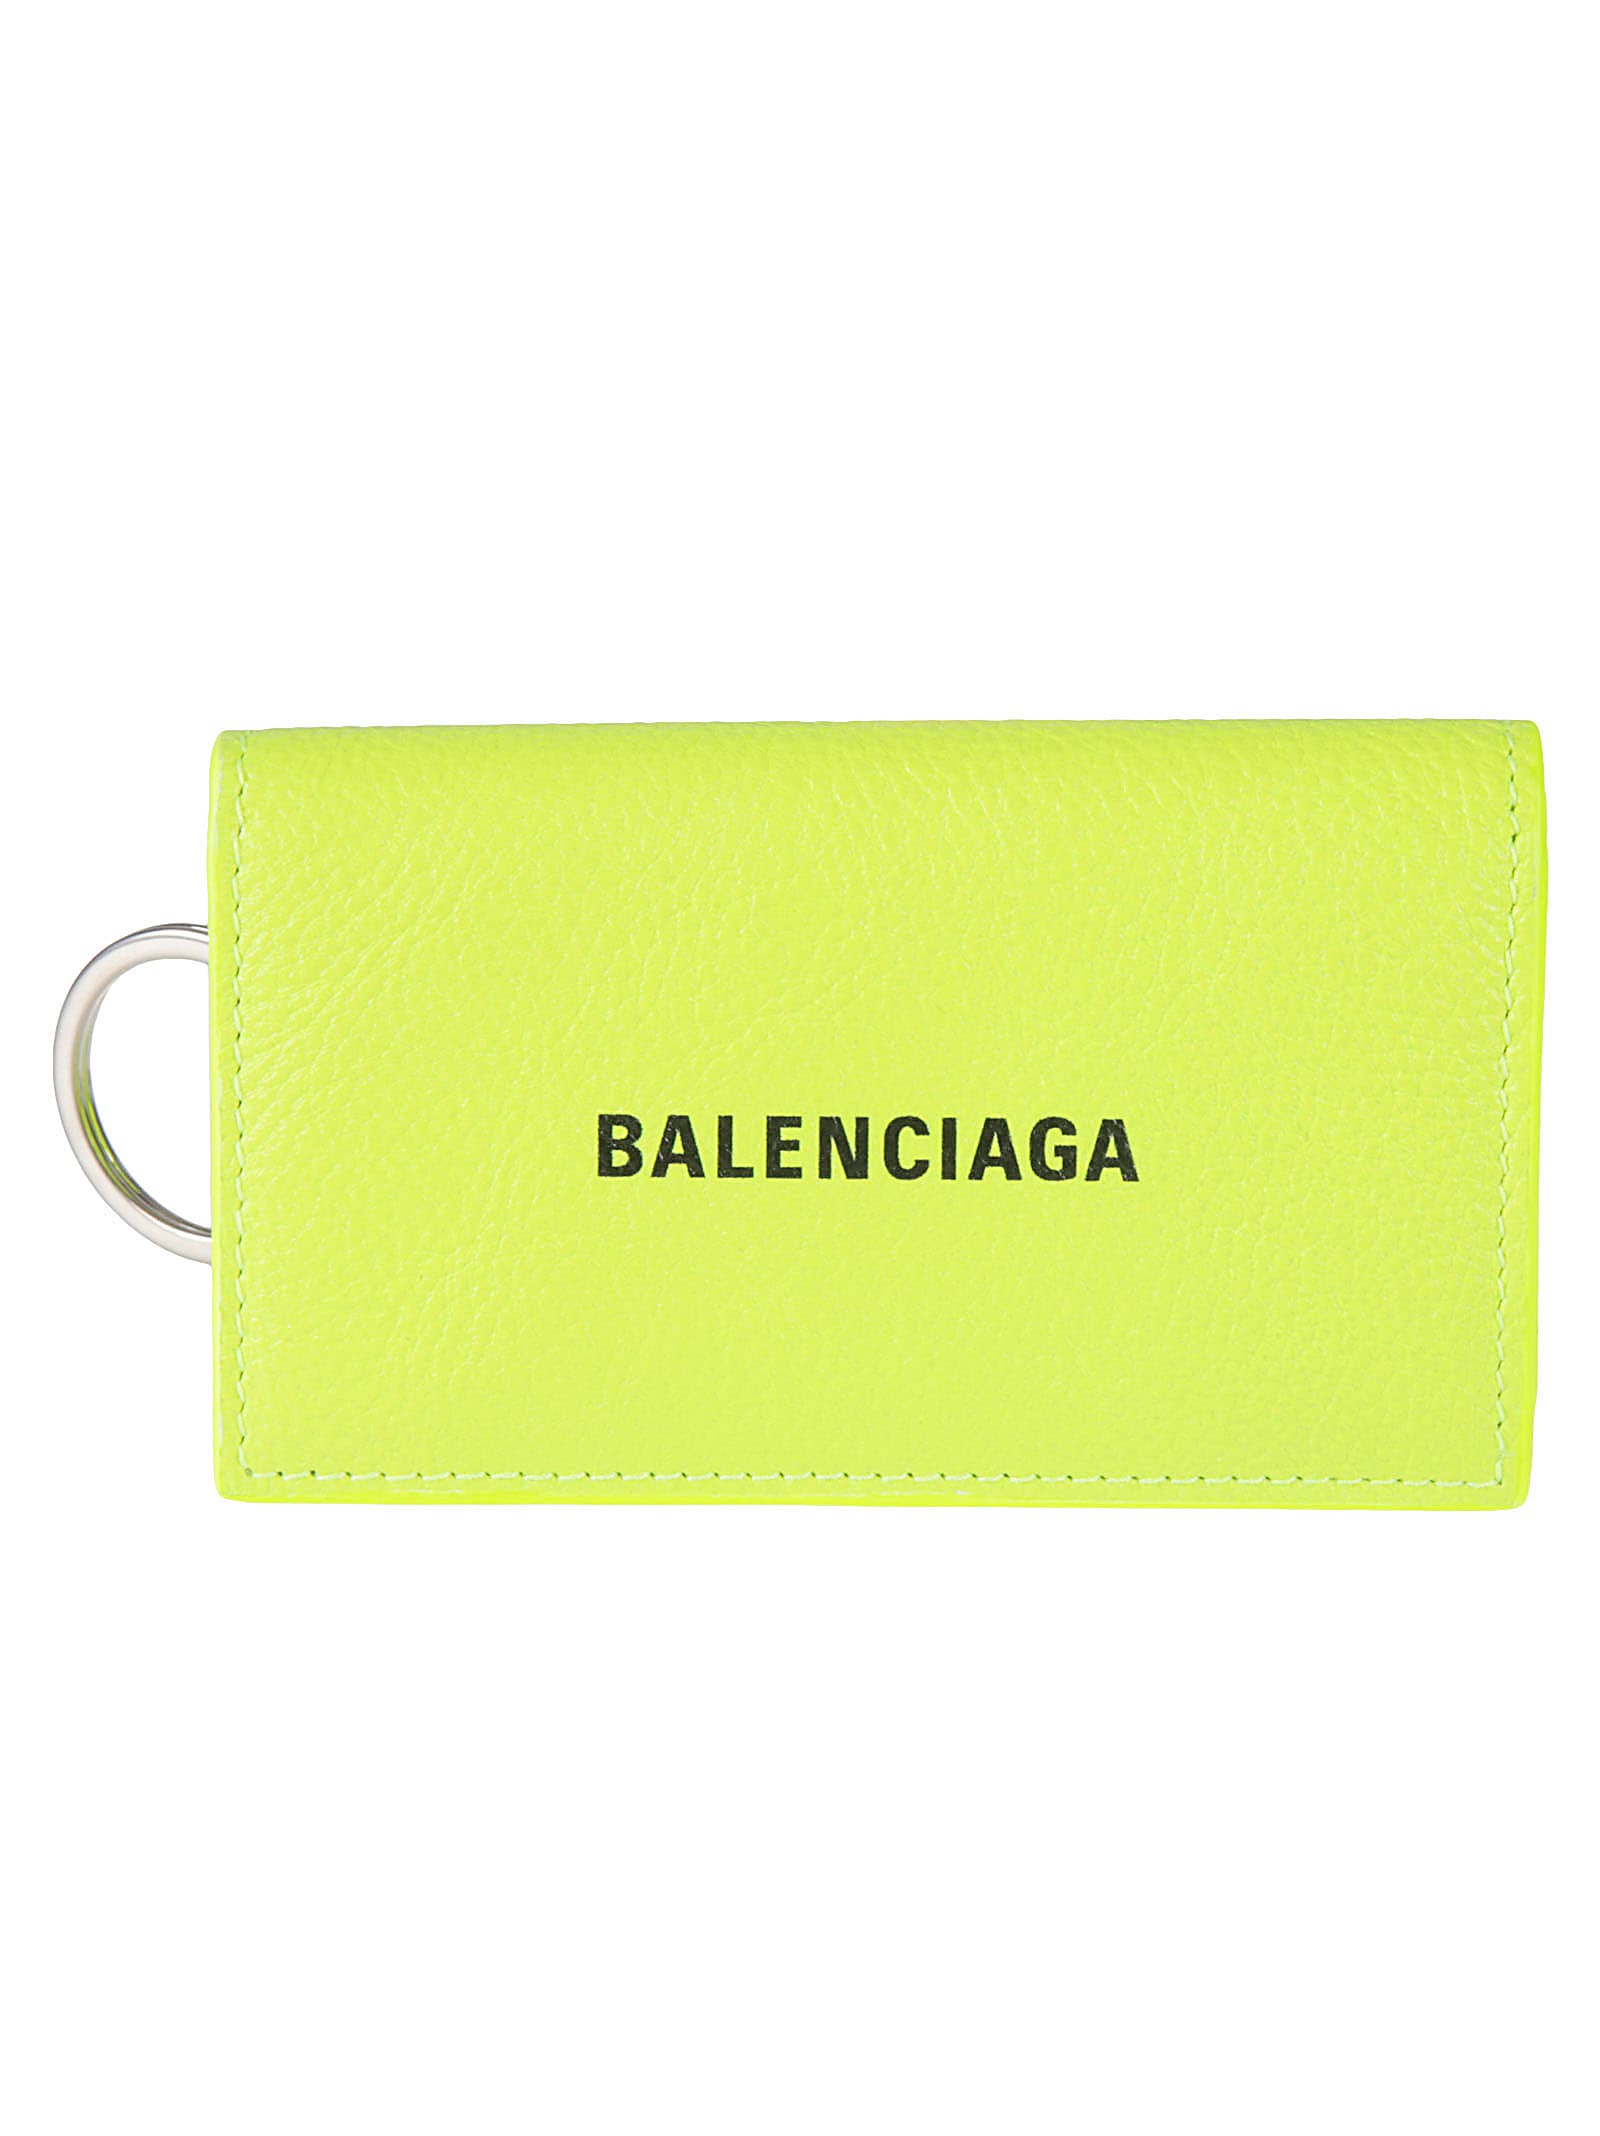 Balenciaga Cash Logo Keyring In Fluo Yellow/black